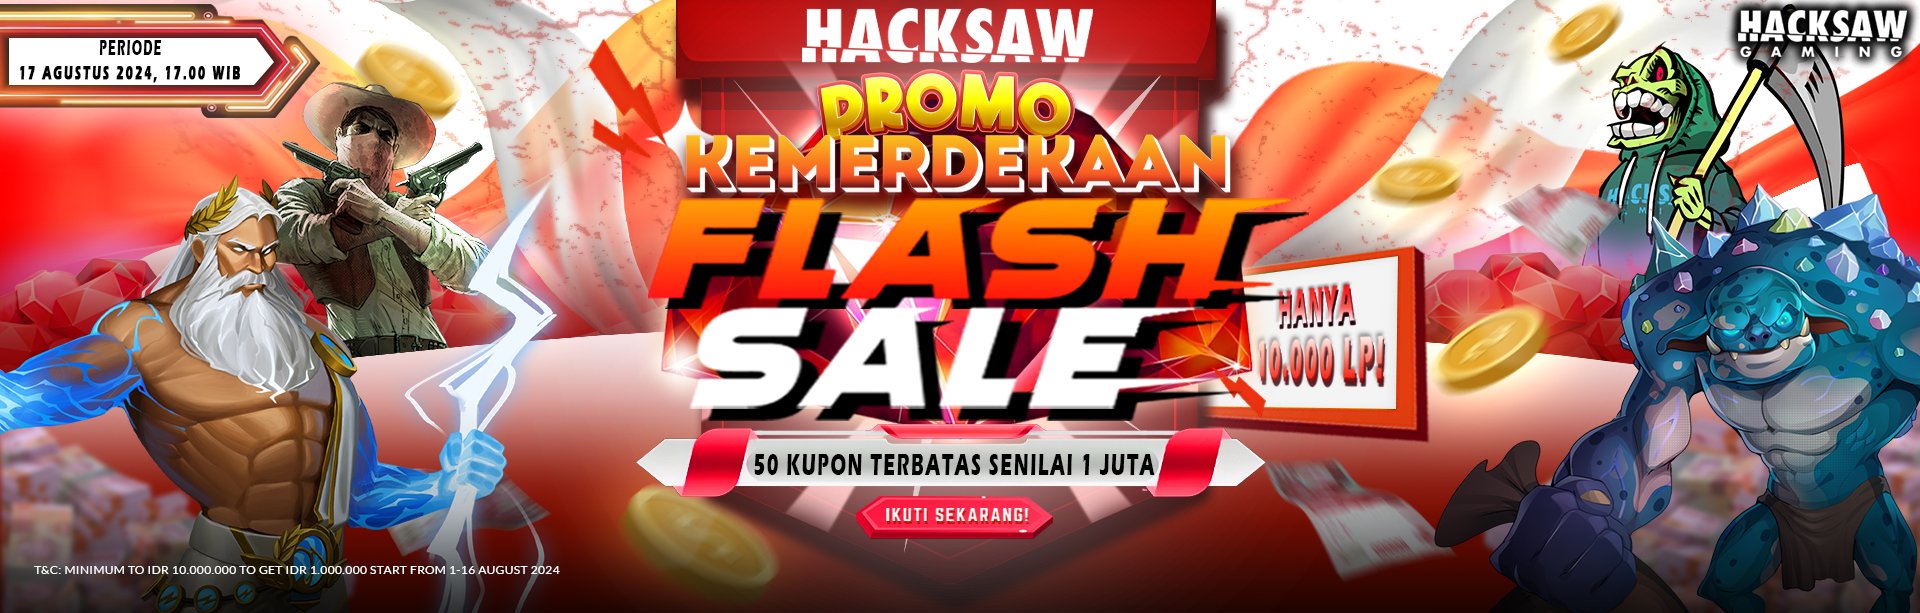 Hacksaw Promo Kemerdekaan Flash Sale